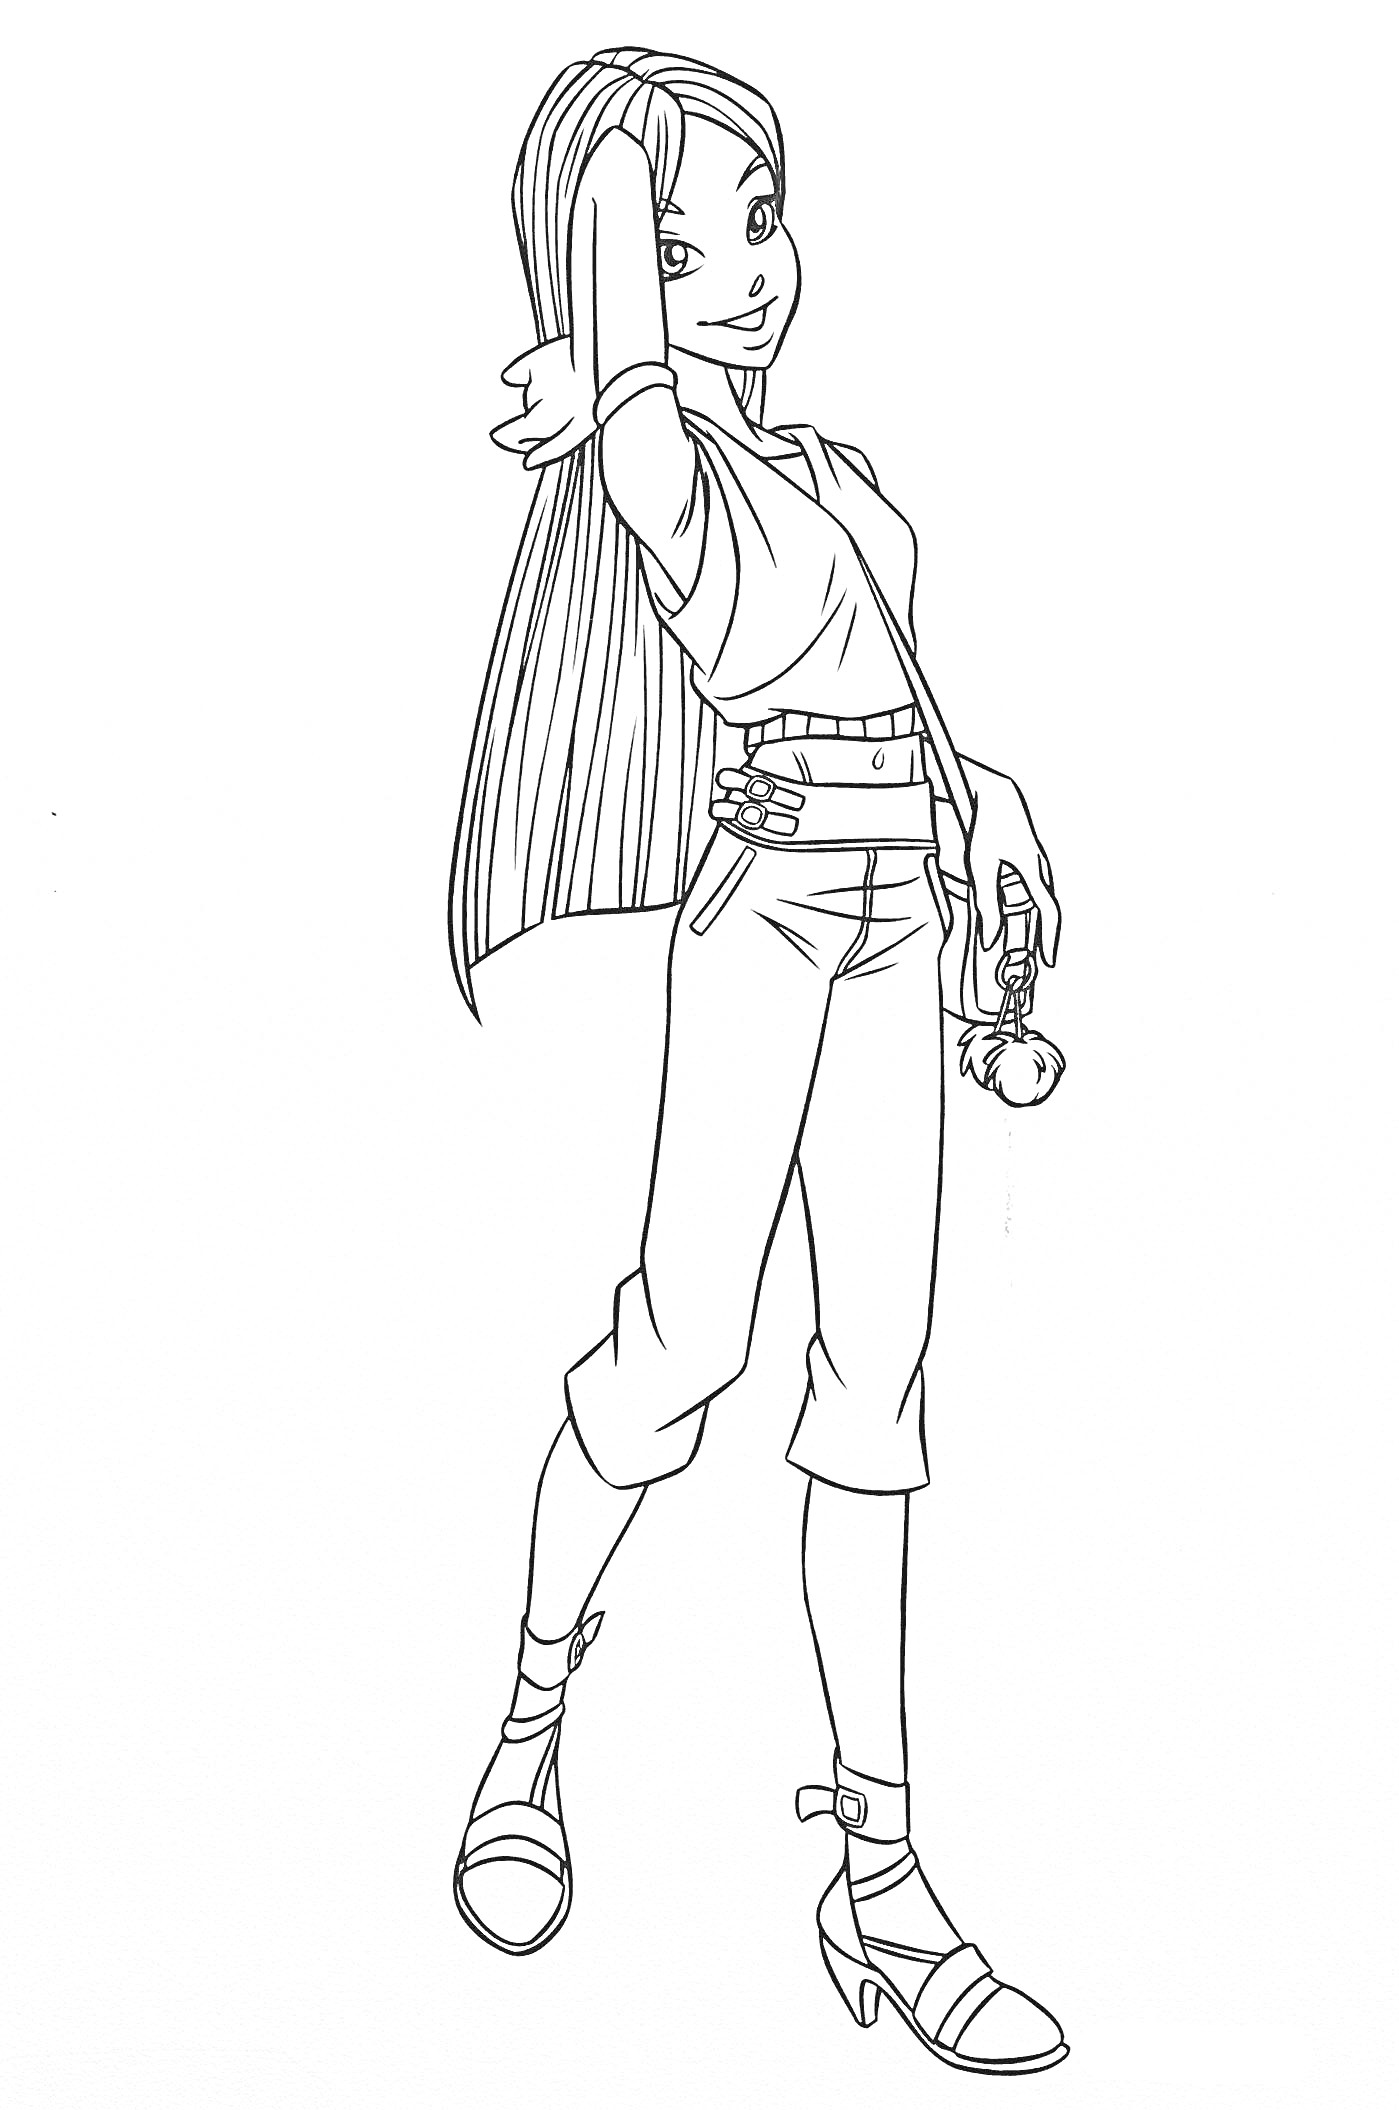 Раскраска Девушка-волшебница с длинными волосами, одета в рубашку, джинсы и босоножки, держит магический предмет в руке